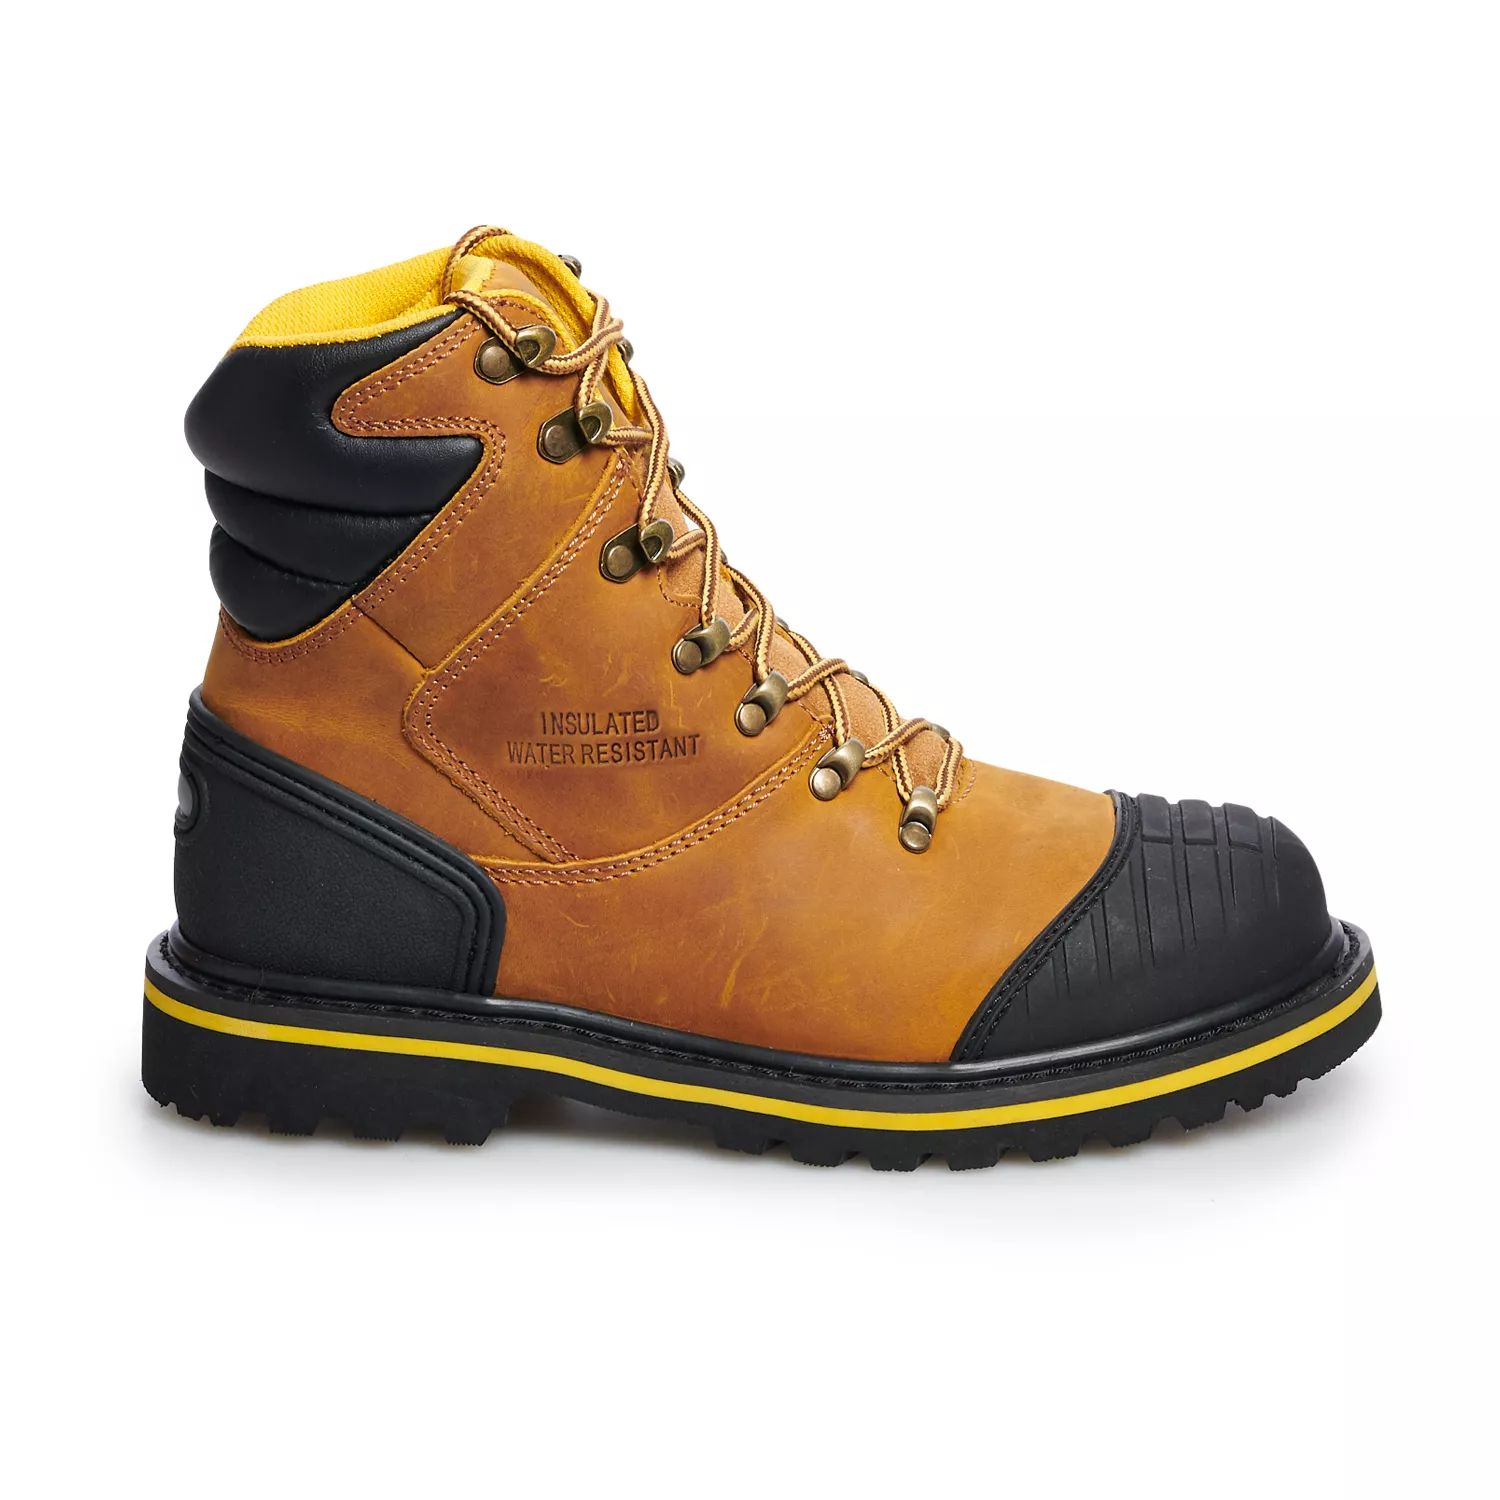 AdTec 9804 Мужские водонепроницаемые рабочие ботинки со стальным носком мужские рабочие ботинки adtec 1312 со стальным носком